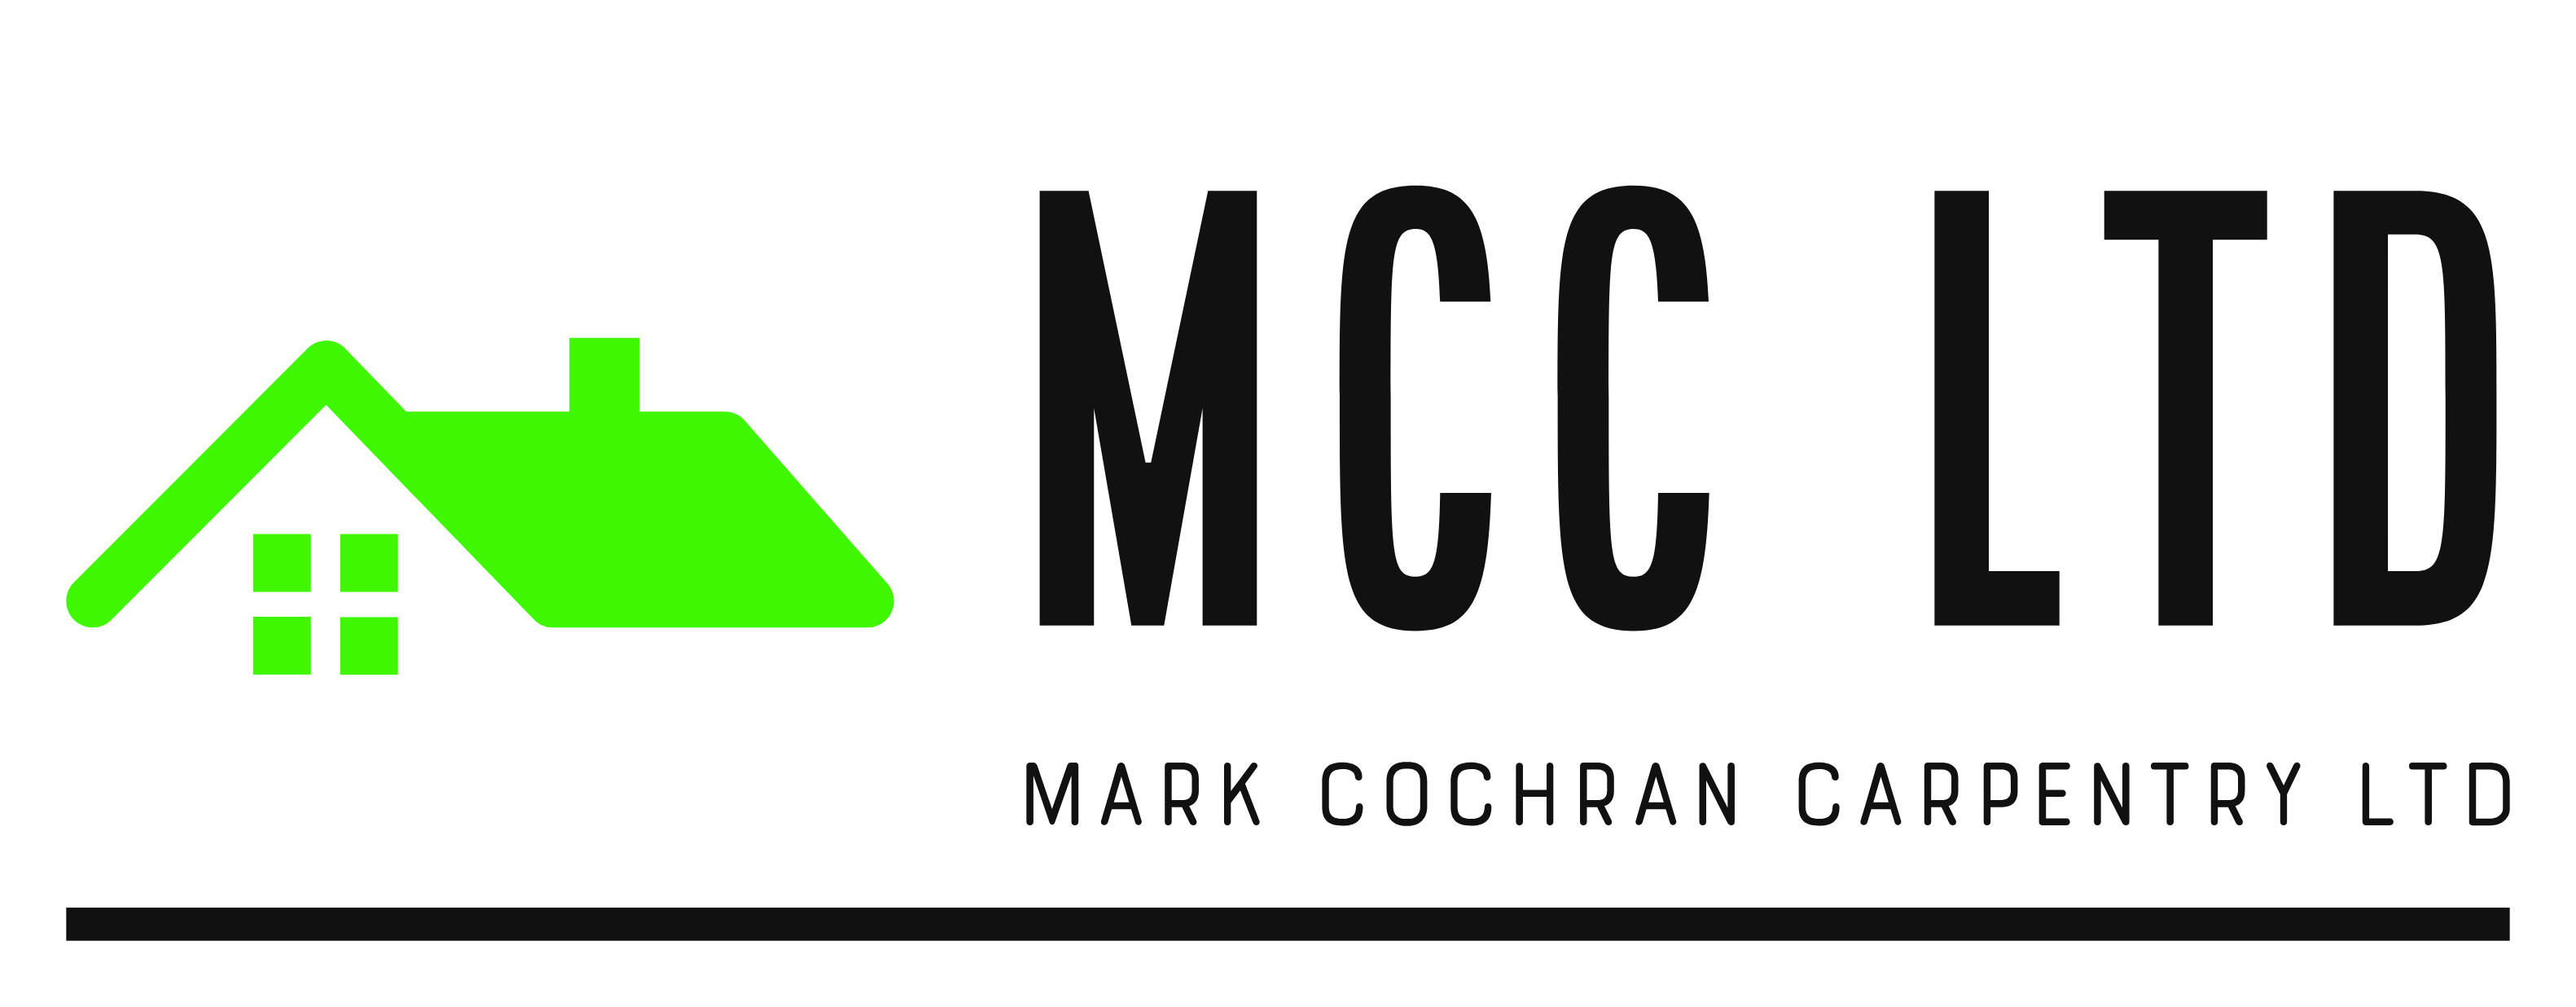 Mark Cochran Carpentry Ltd Logo